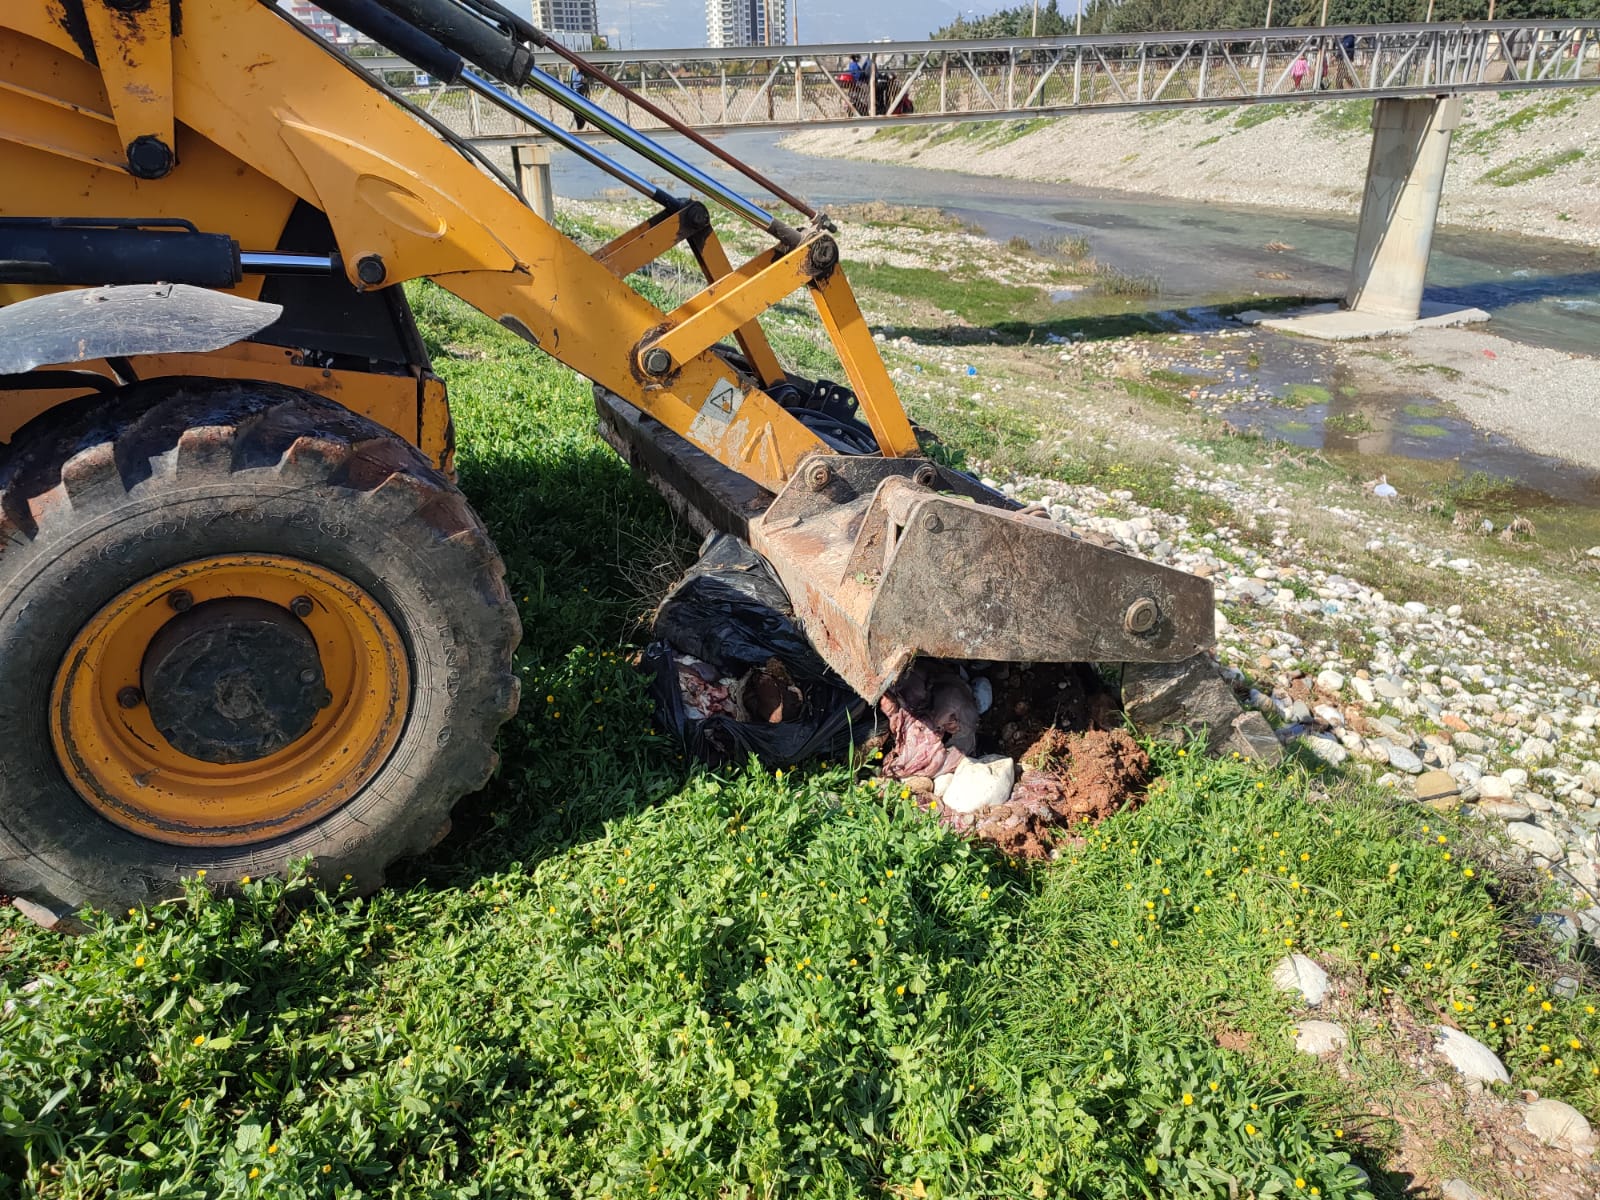 Dere yatağına atılan etler Yenişehir Belediyesi tarafından imha edildi